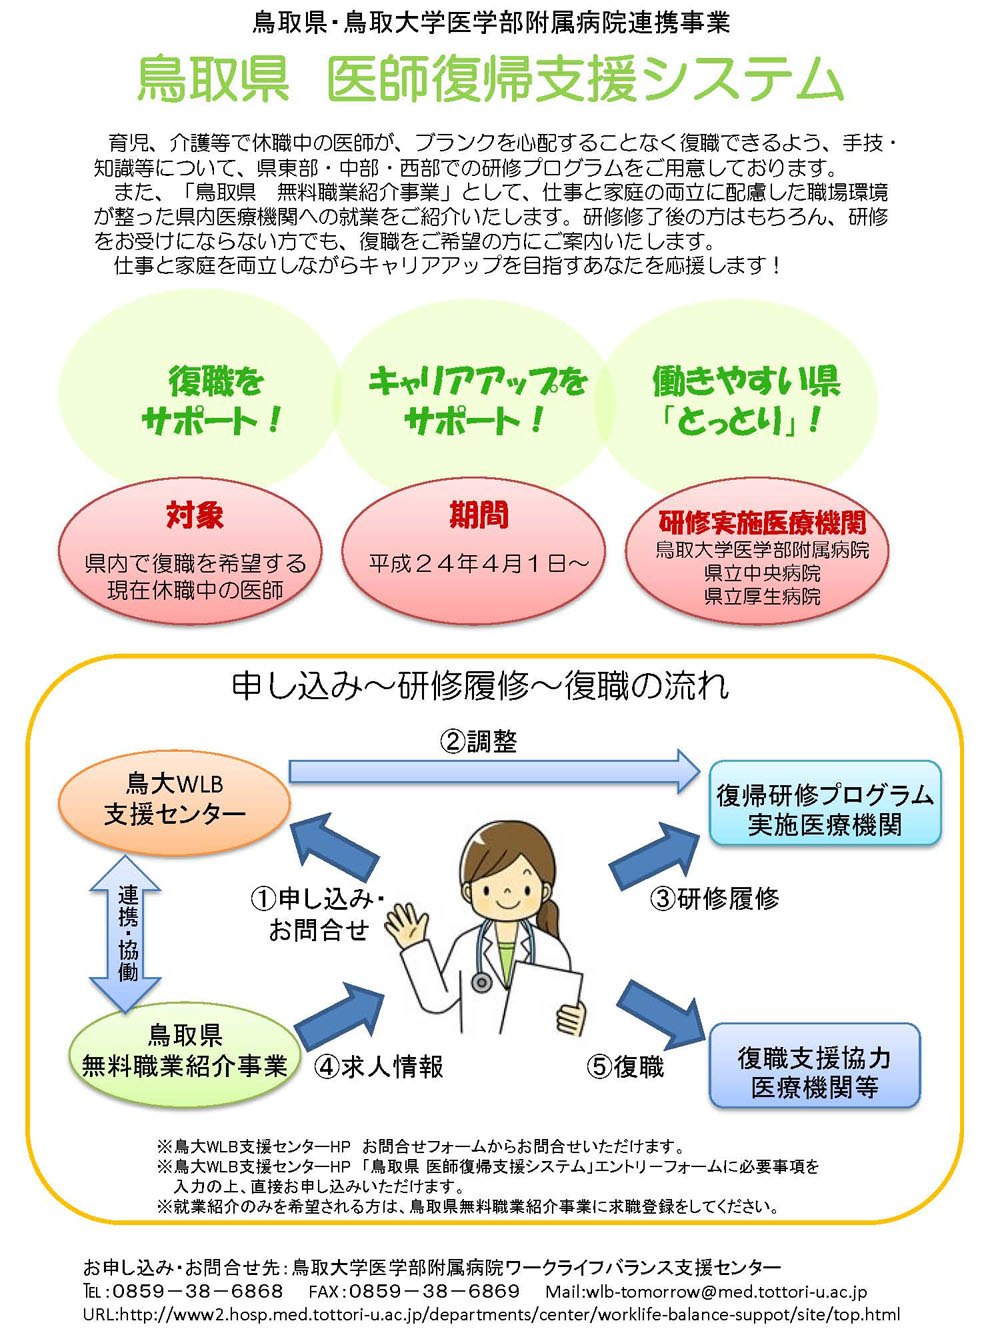 鳥取県医師復帰支援システムポスター (H24.4.25)_ページ_1